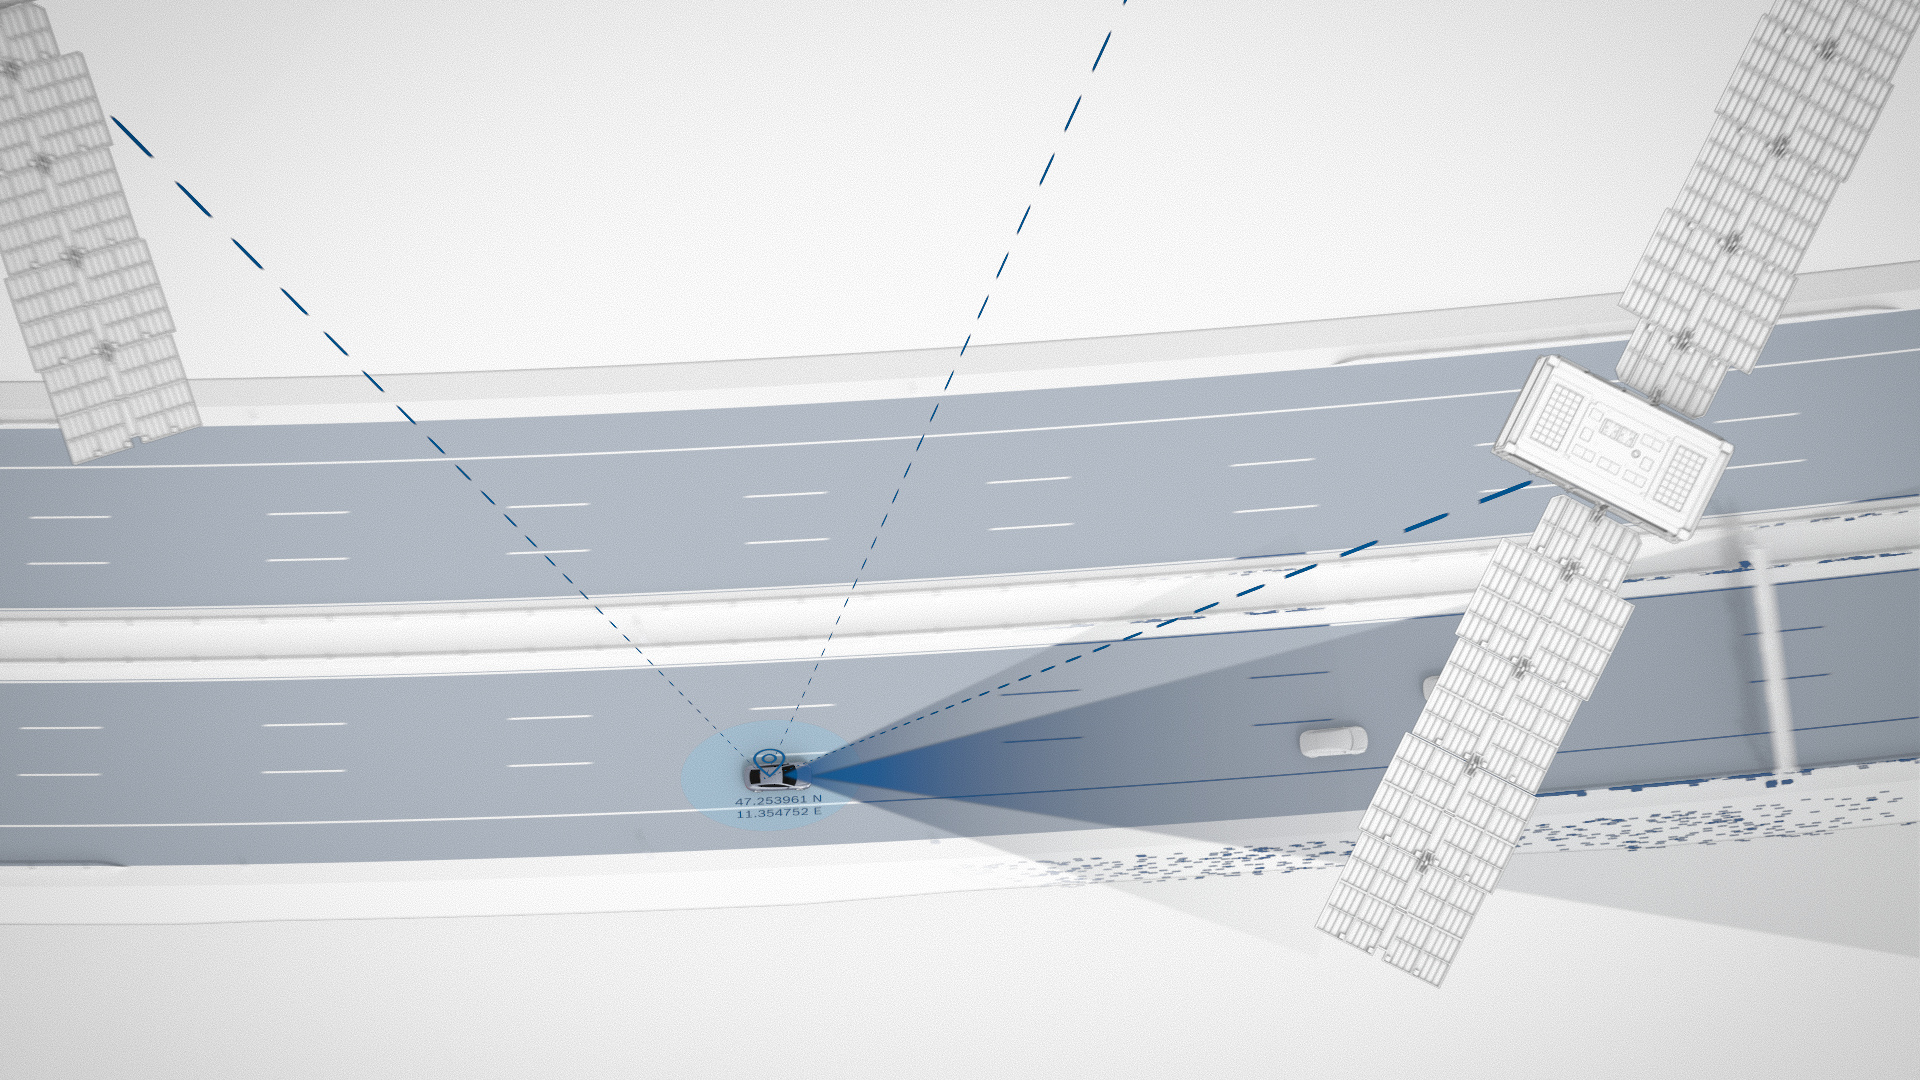 Guida autonoma sicura con Bosch:  la differenza è nei centimetri